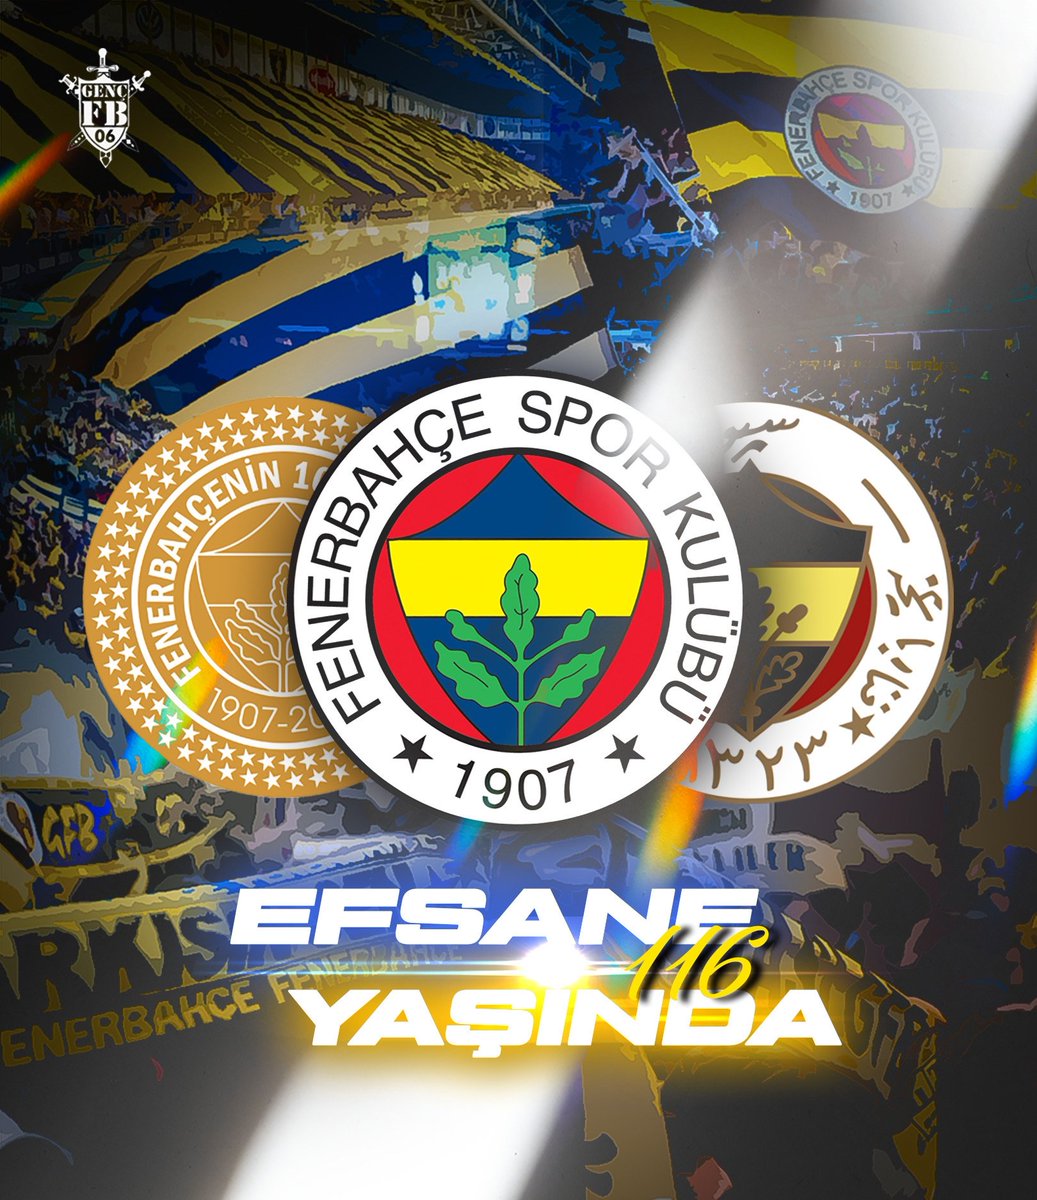 Sonsuza kadar Yaşa Fenerbahçe!

#Efsane116Yaşında